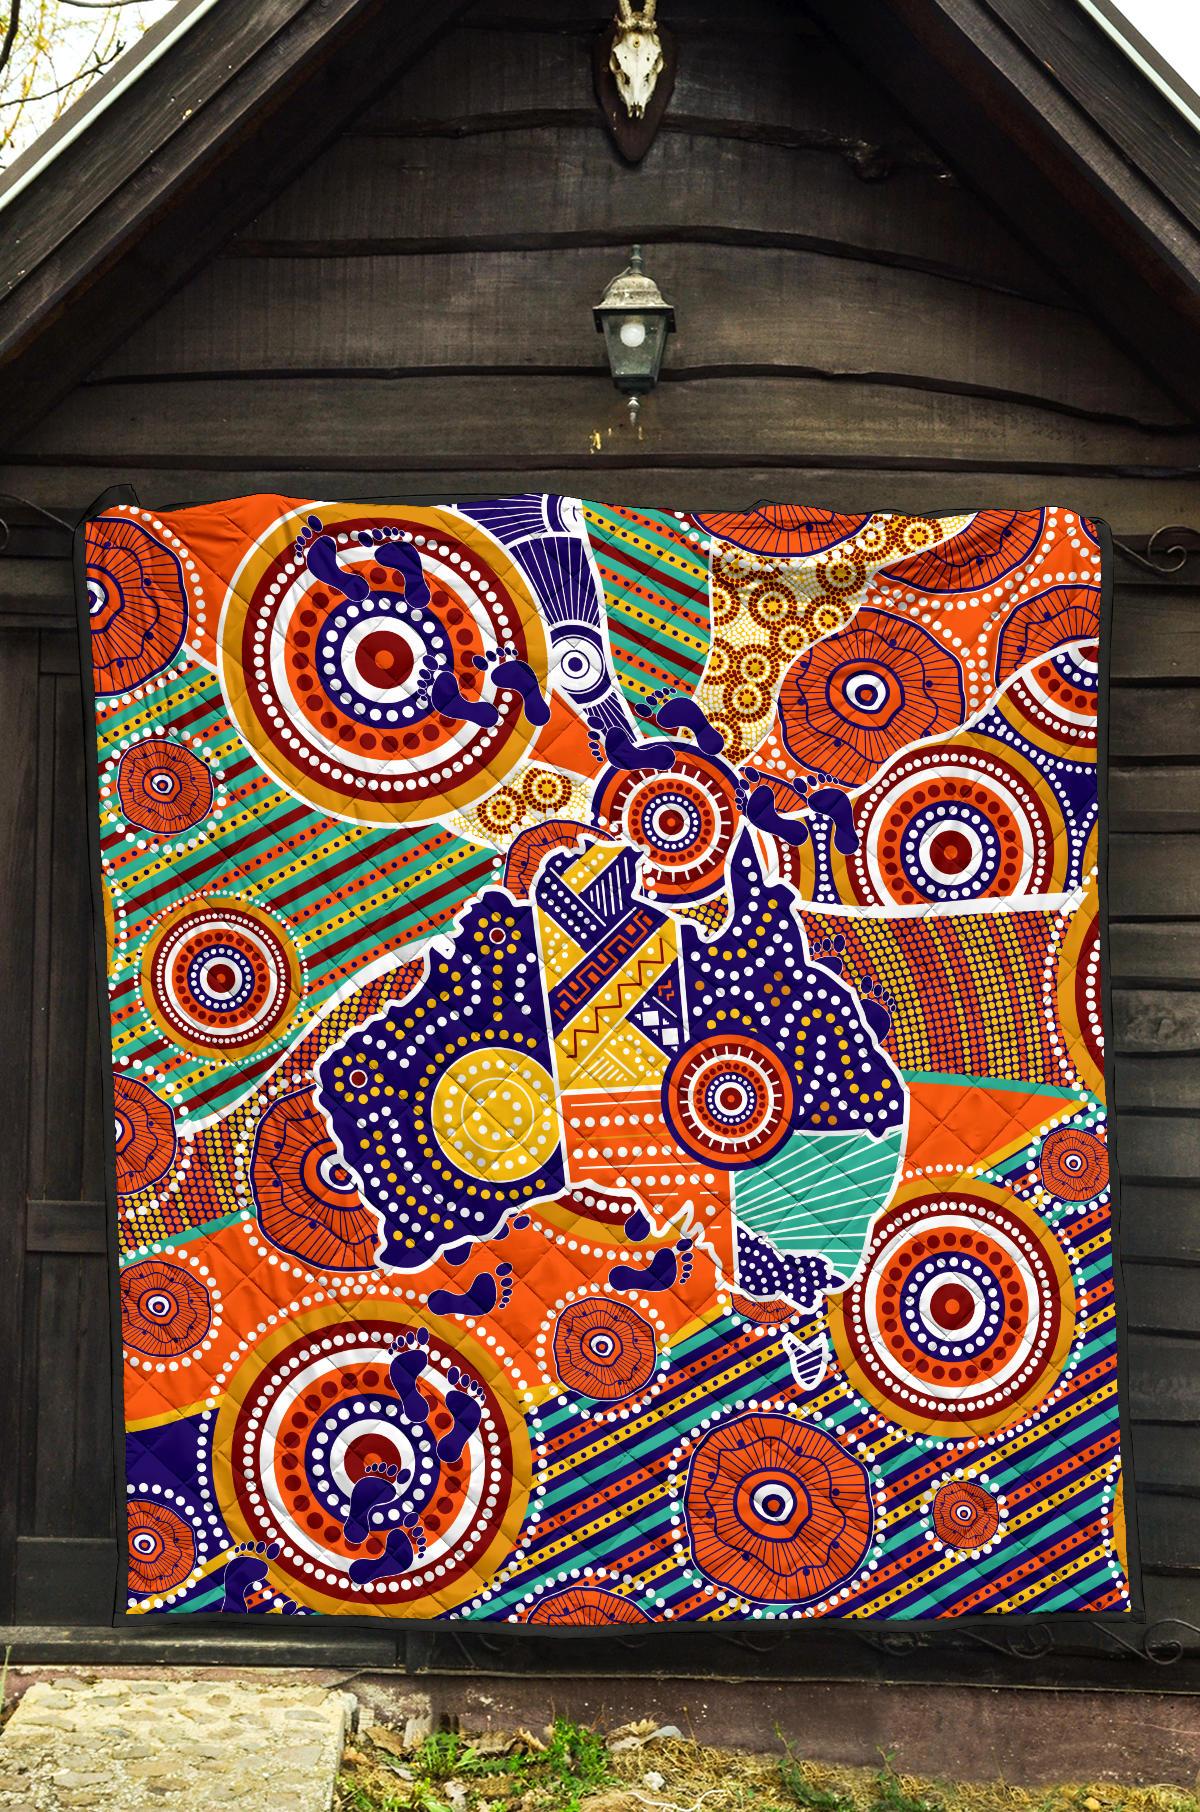 Aboriginal Premium Quilt - Australian Map Dot Painting